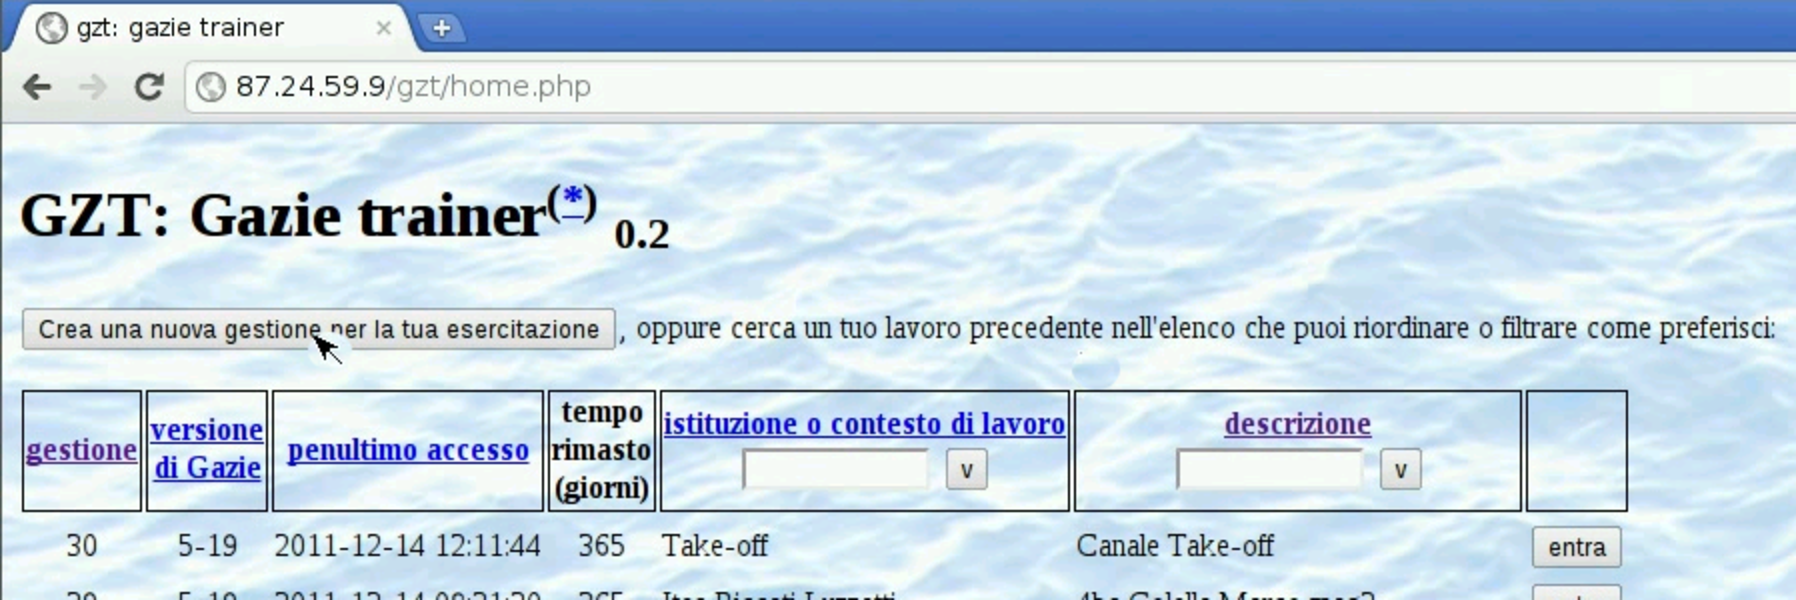 Utilizzo di «gzt.nssitaly.com» «a2» 2013.11.11 --- Copyright Daniele Giacomini -- appunti2@gmail.com http://informaticalibera.net Presso http://gzt.nssitaly.com ed eventualmente presso altri indirizzi è disponibile un servizio per l utilizzo didattico di Gazie.